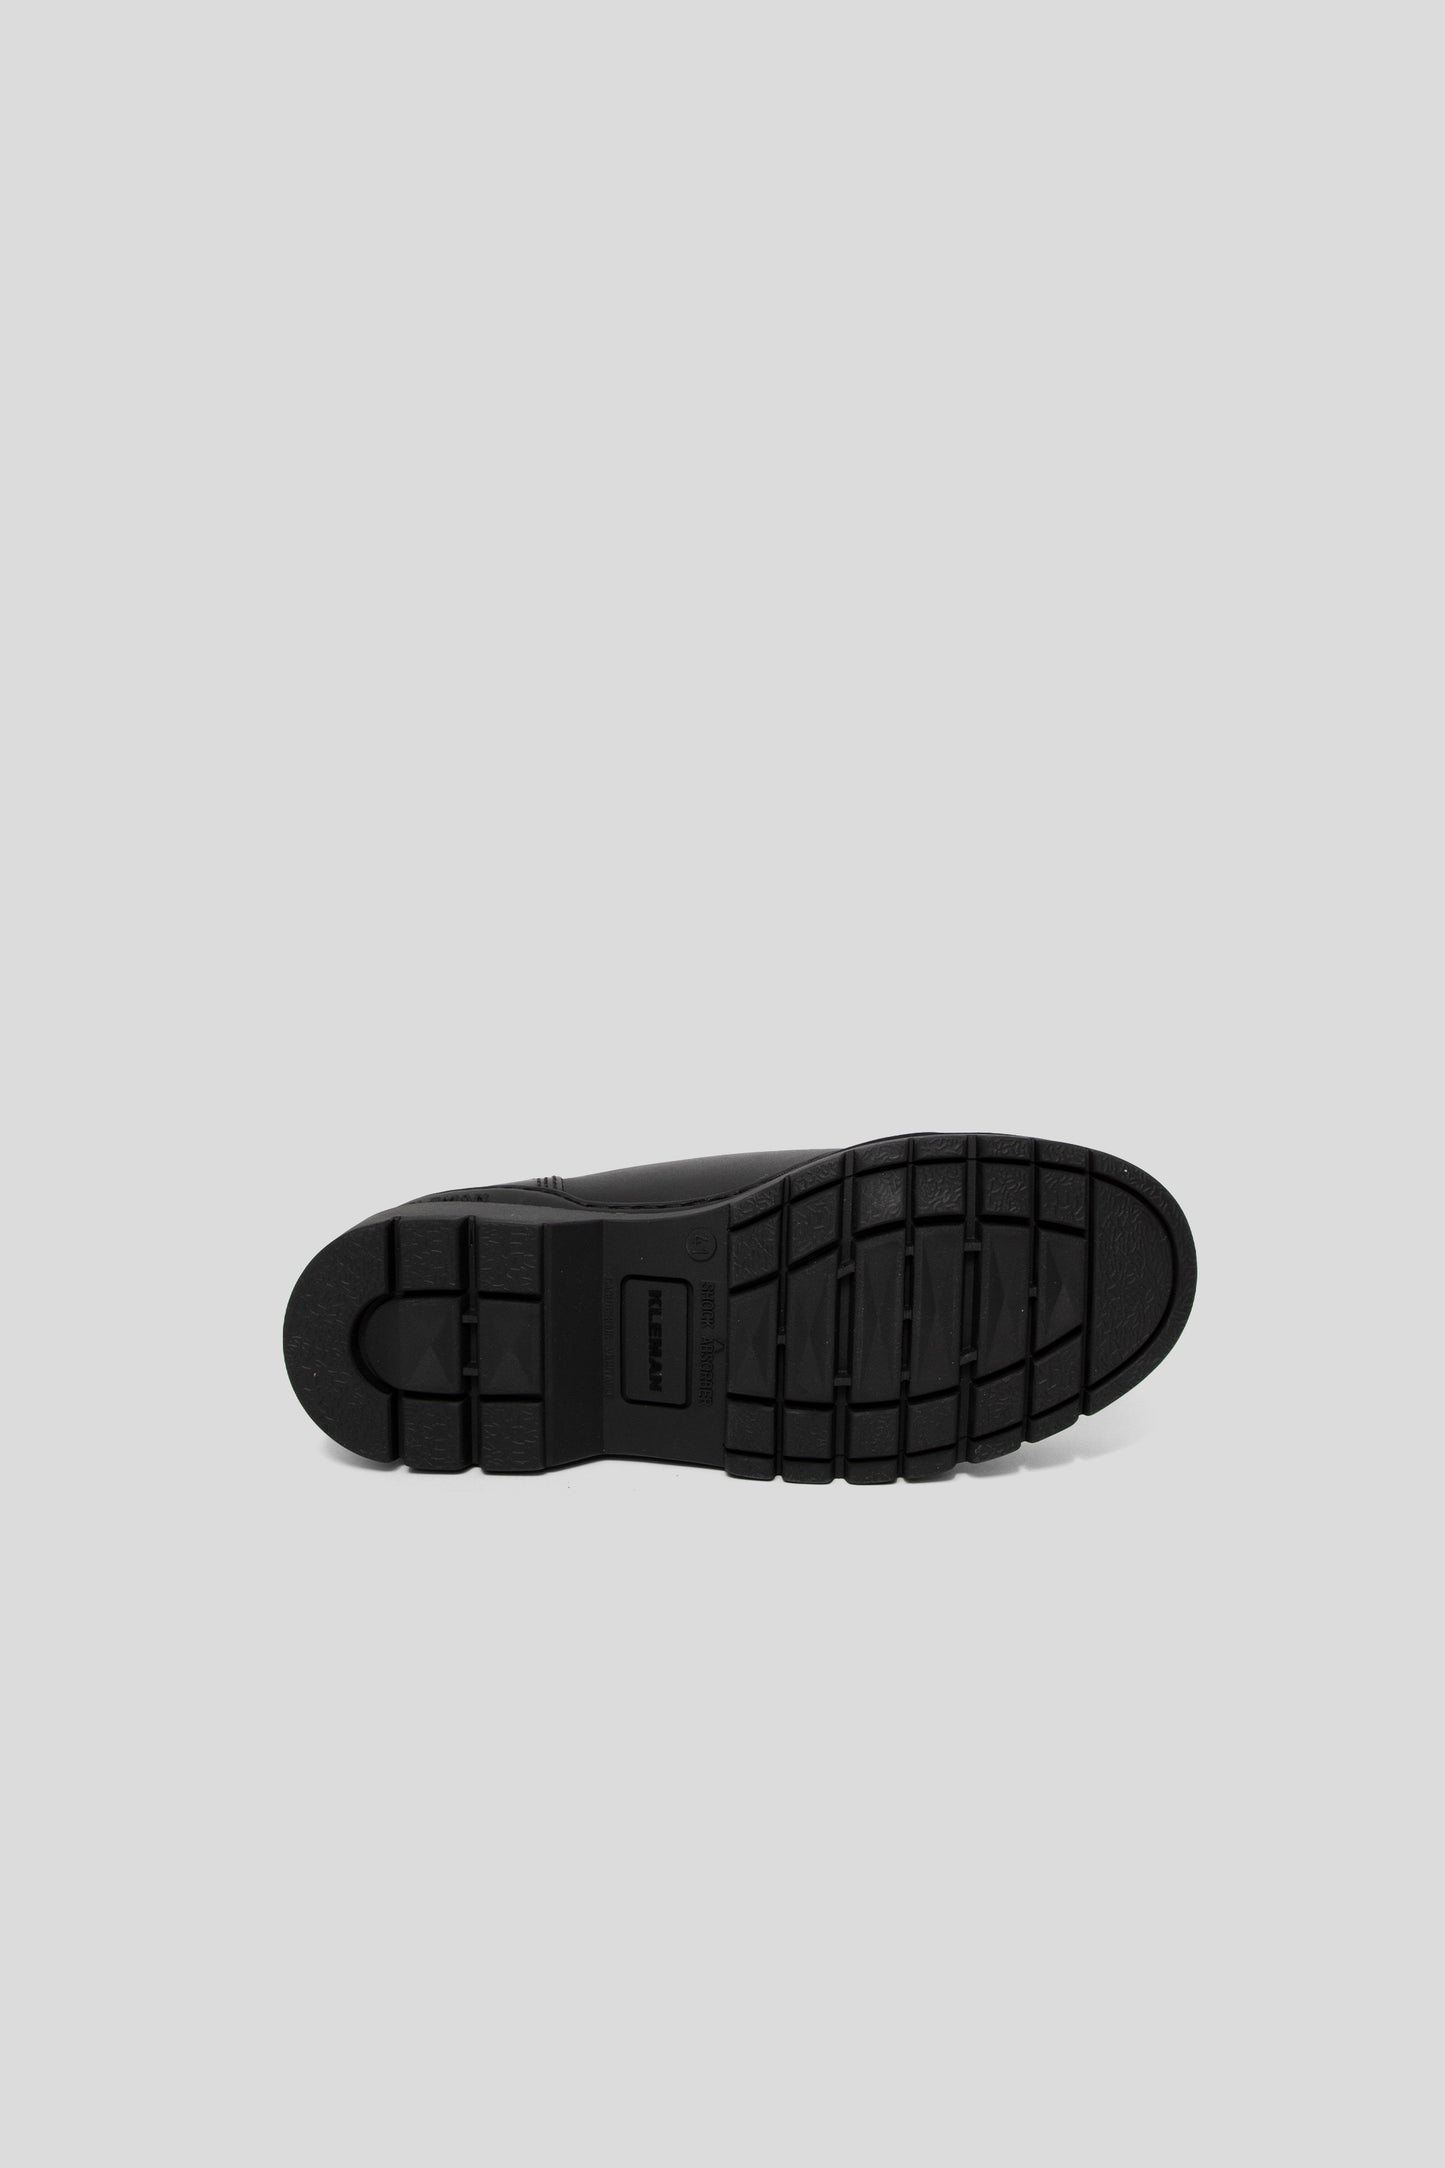 Kleman Major Shoe in Black